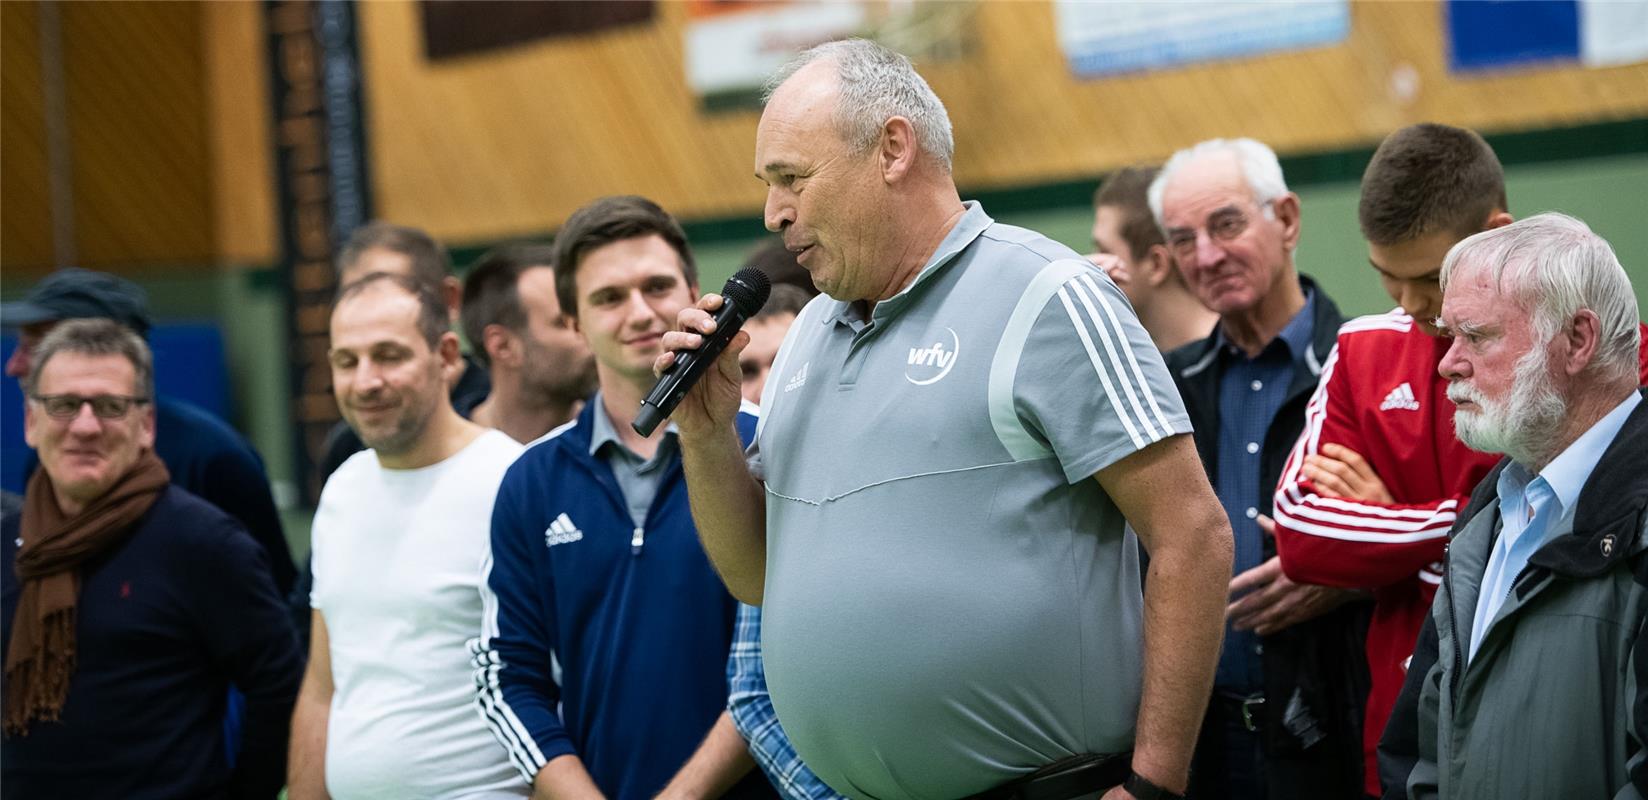 Schiri Thomas Schnaufer wird verabschiedet   Gäubote Cup 2019 Fußballturnier Hal...